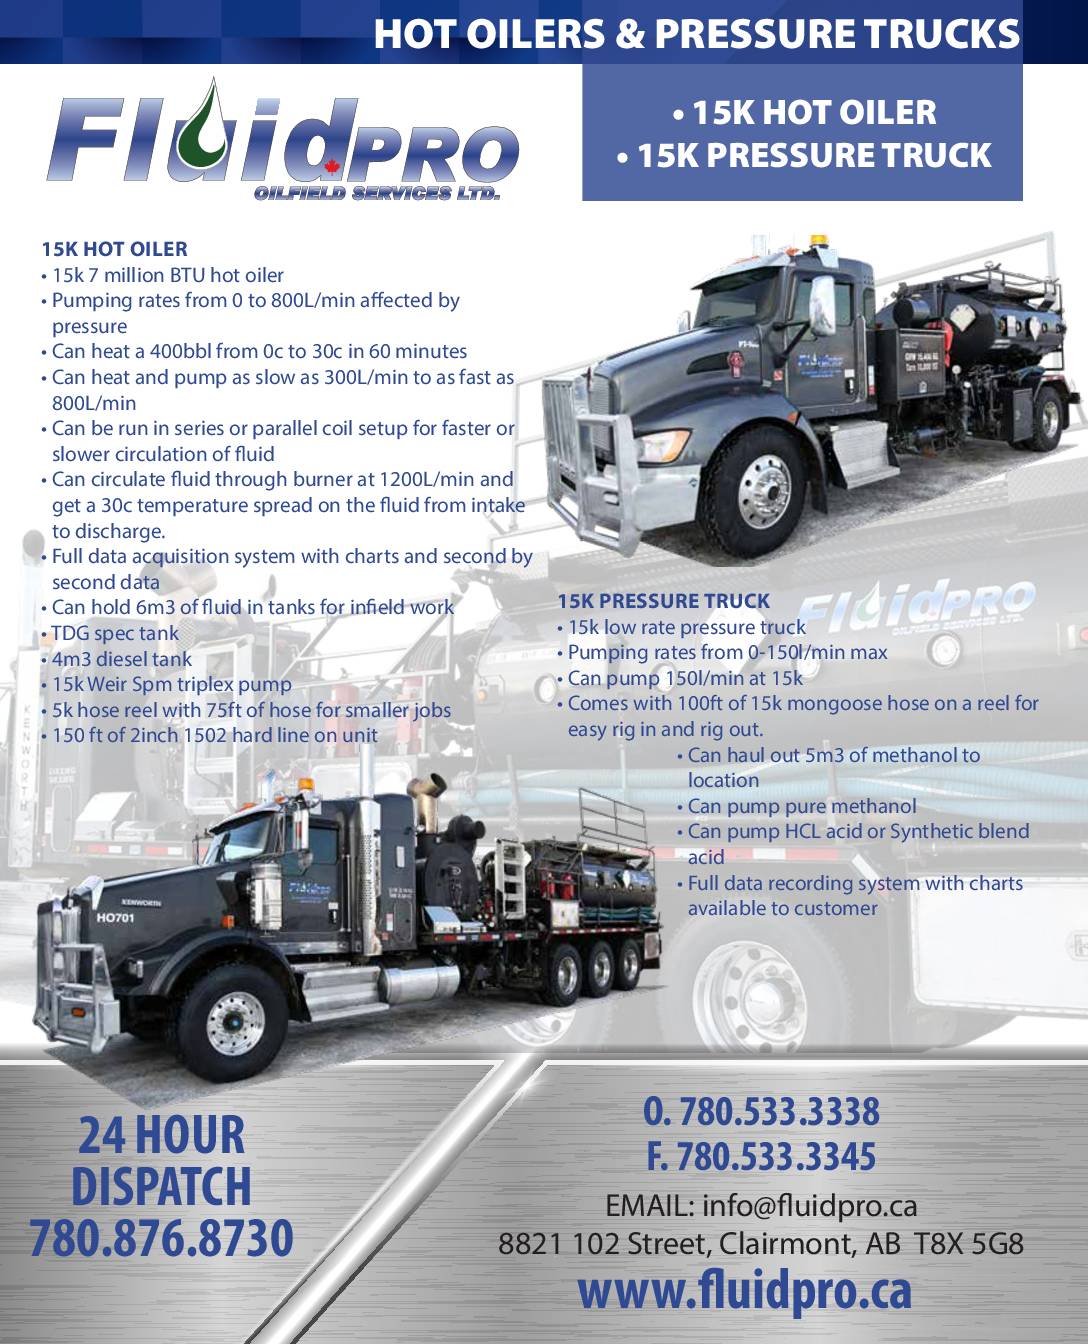 Hot Oilers & Pressure Trucks